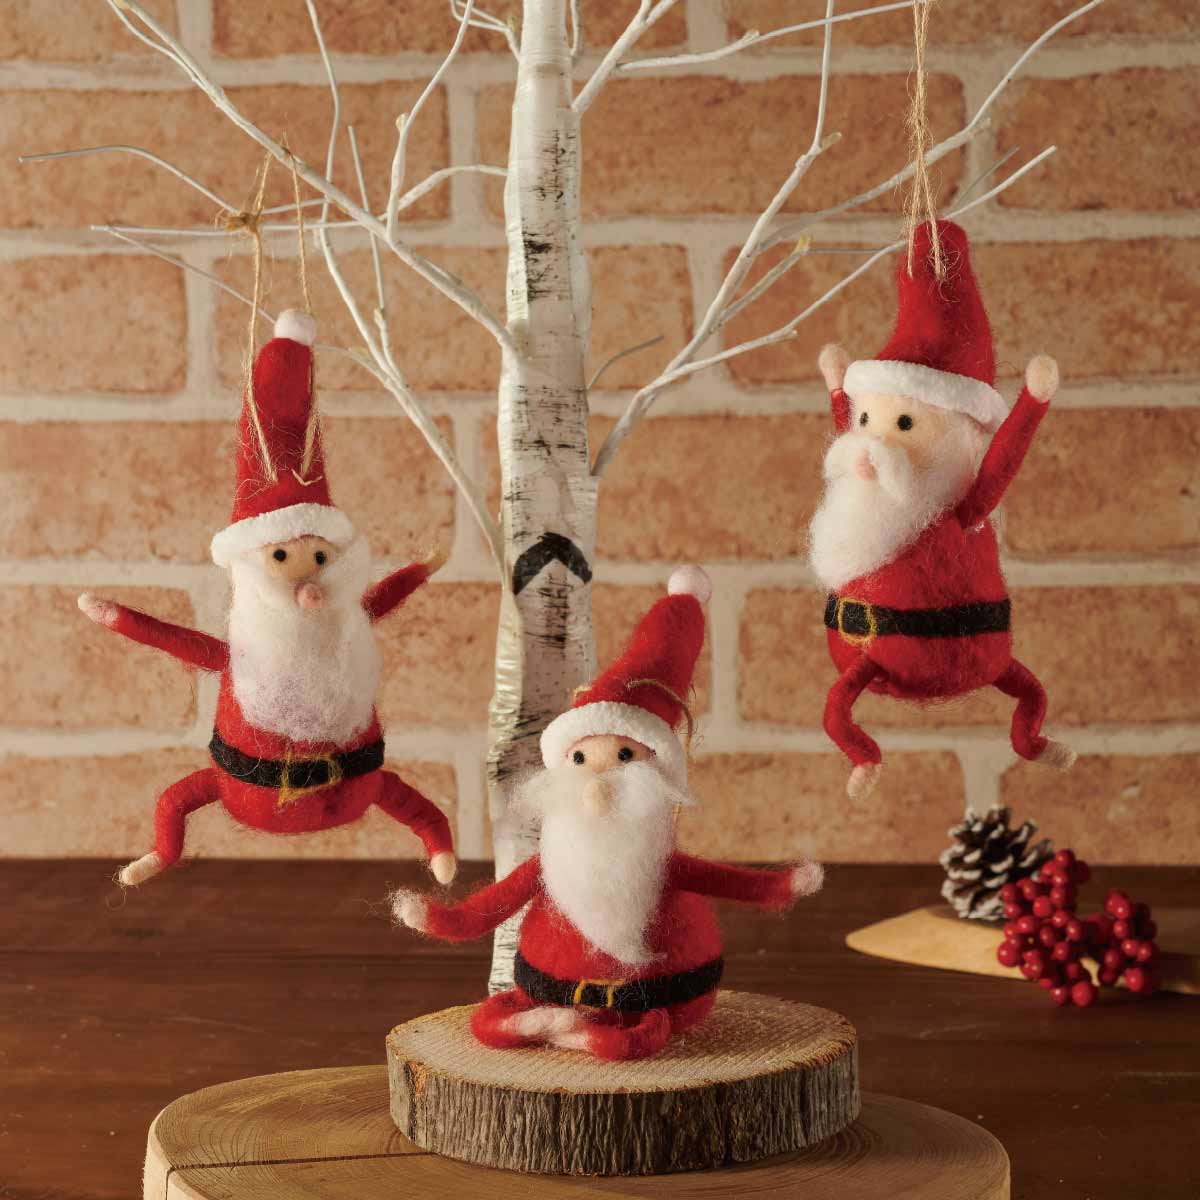 クリスマス ガーランド サンタさん サンタ 装飾 飾り付け - クリスマス